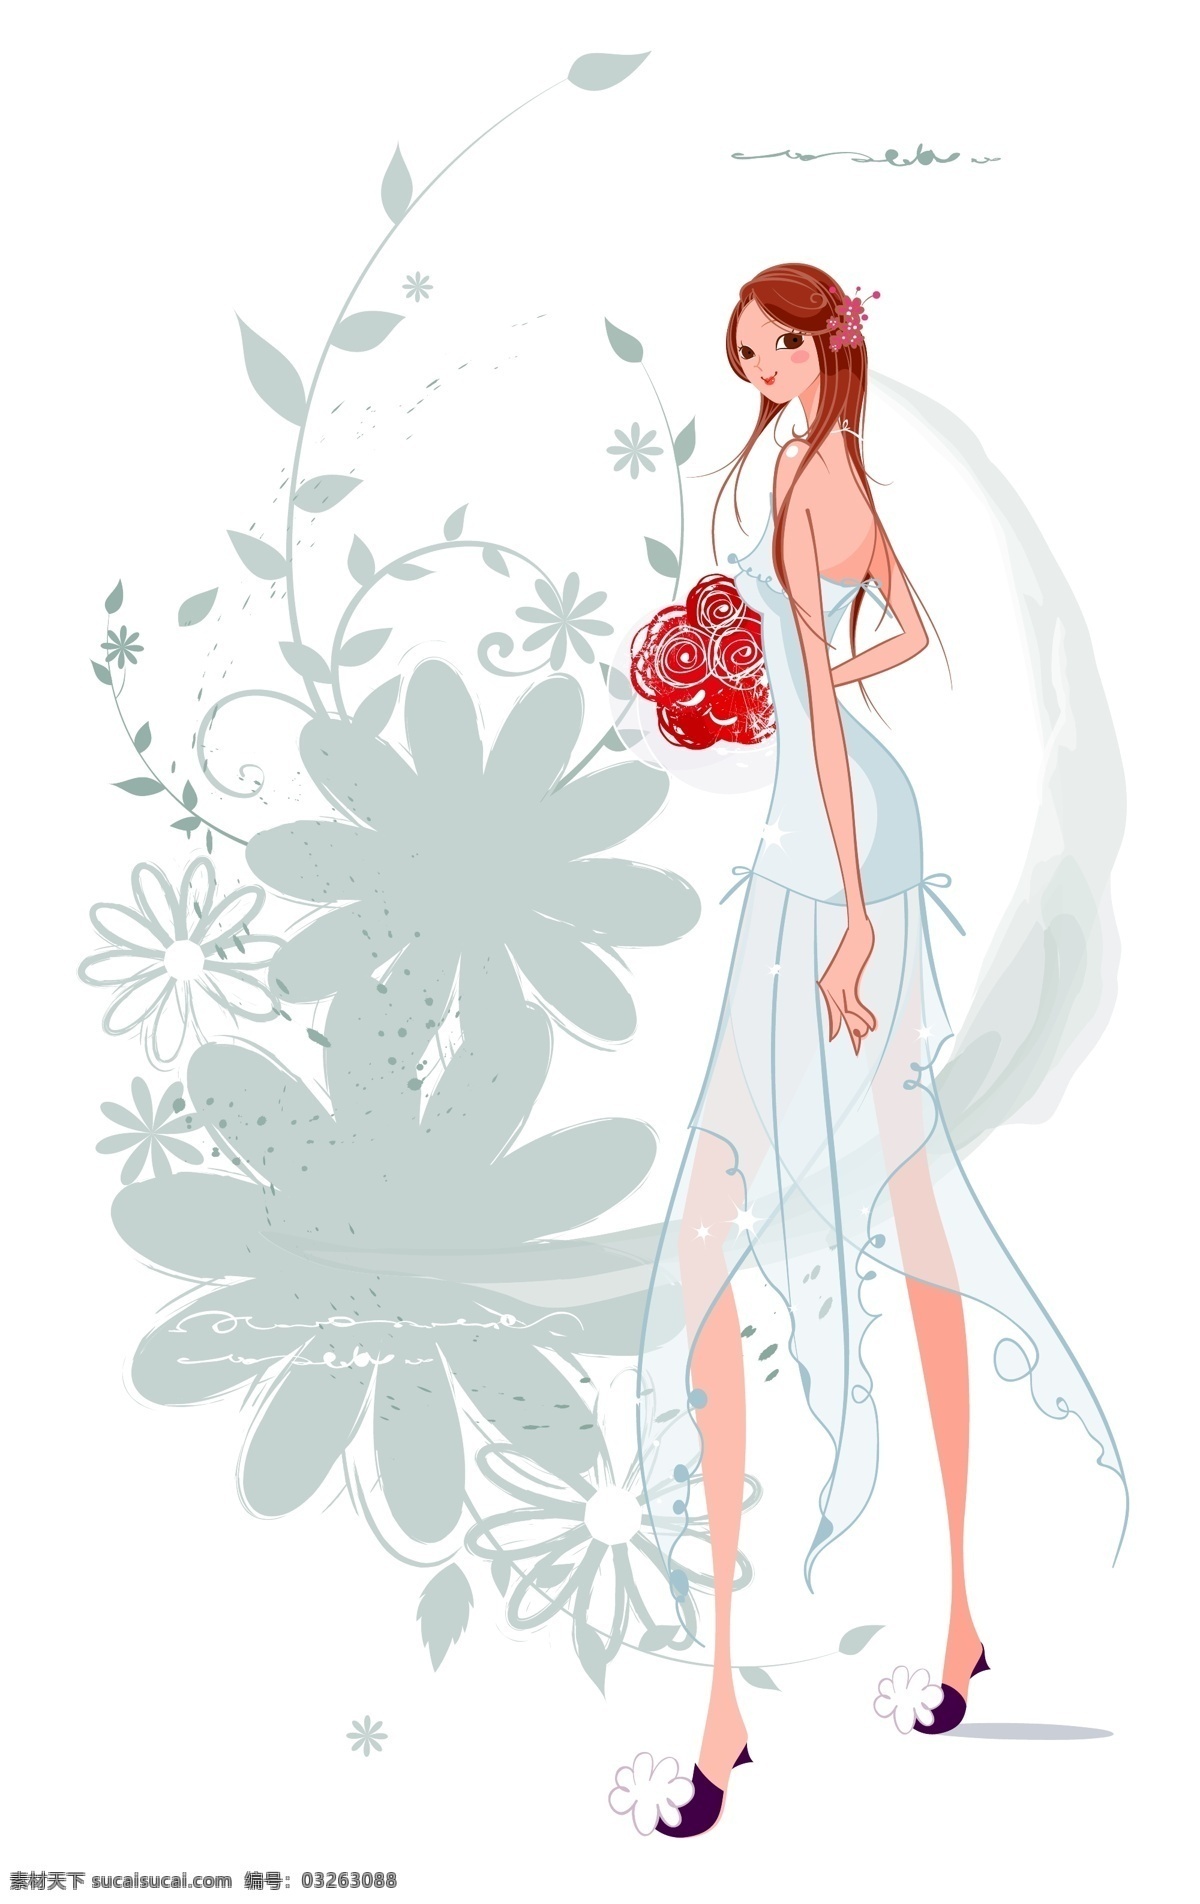 穿着 蓝色 礼服 新娘 婚庆 插画 插画新娘 蓝色礼服 红玫瑰捧花 花卉 手绘卡片 婚礼贺卡 手绘画 白色